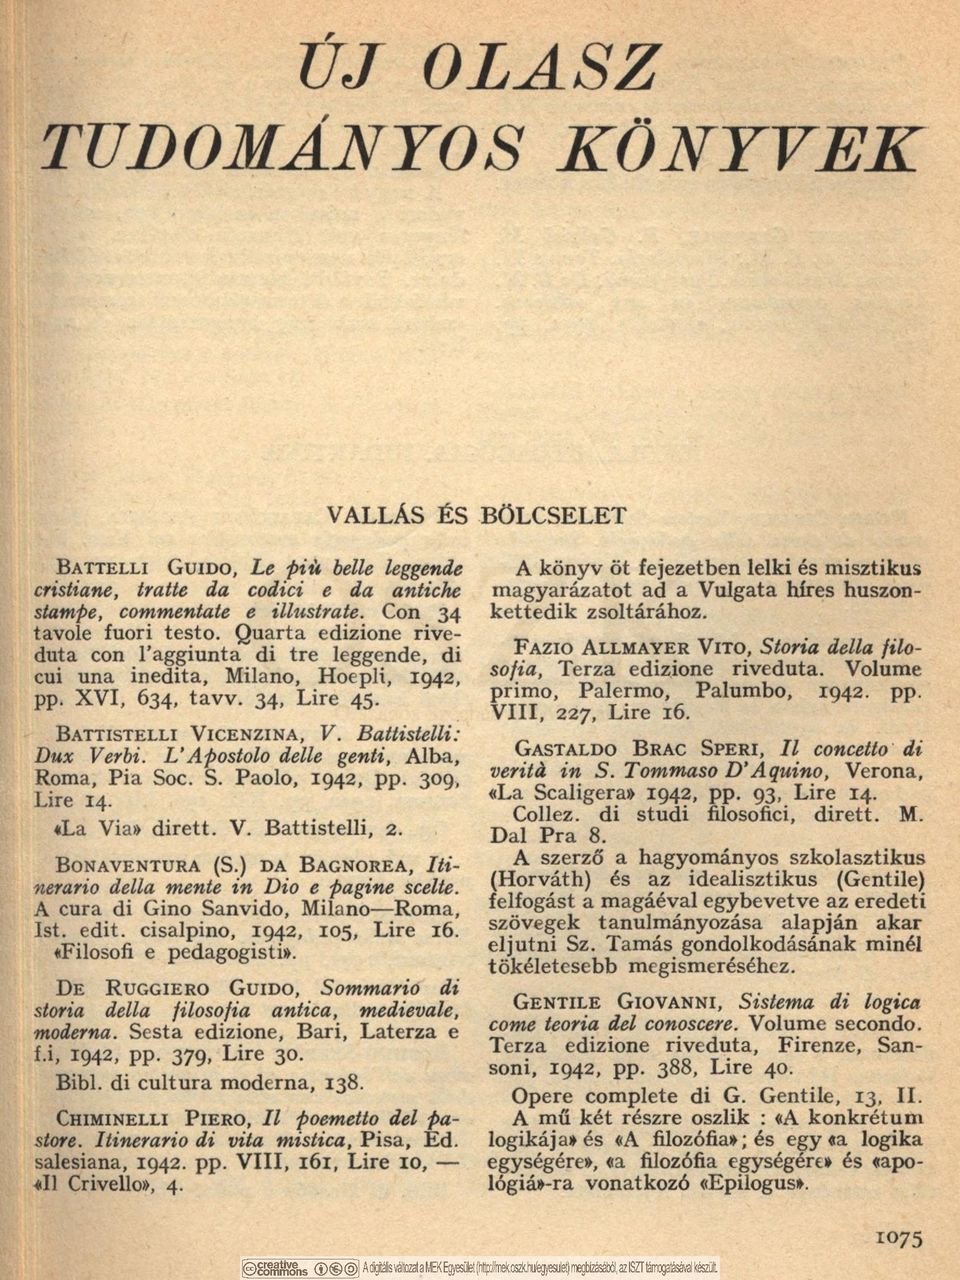 B a t t i s t e l l i V i c e n z i n a, V. Battistelli: Dux Verbi. L Apostolo delle genti, Alba, Roma, Pia Soc. S. Paolo, 1942, pp. 309, Lire 14. «La Via» dirett. V. Battistelli, 2.